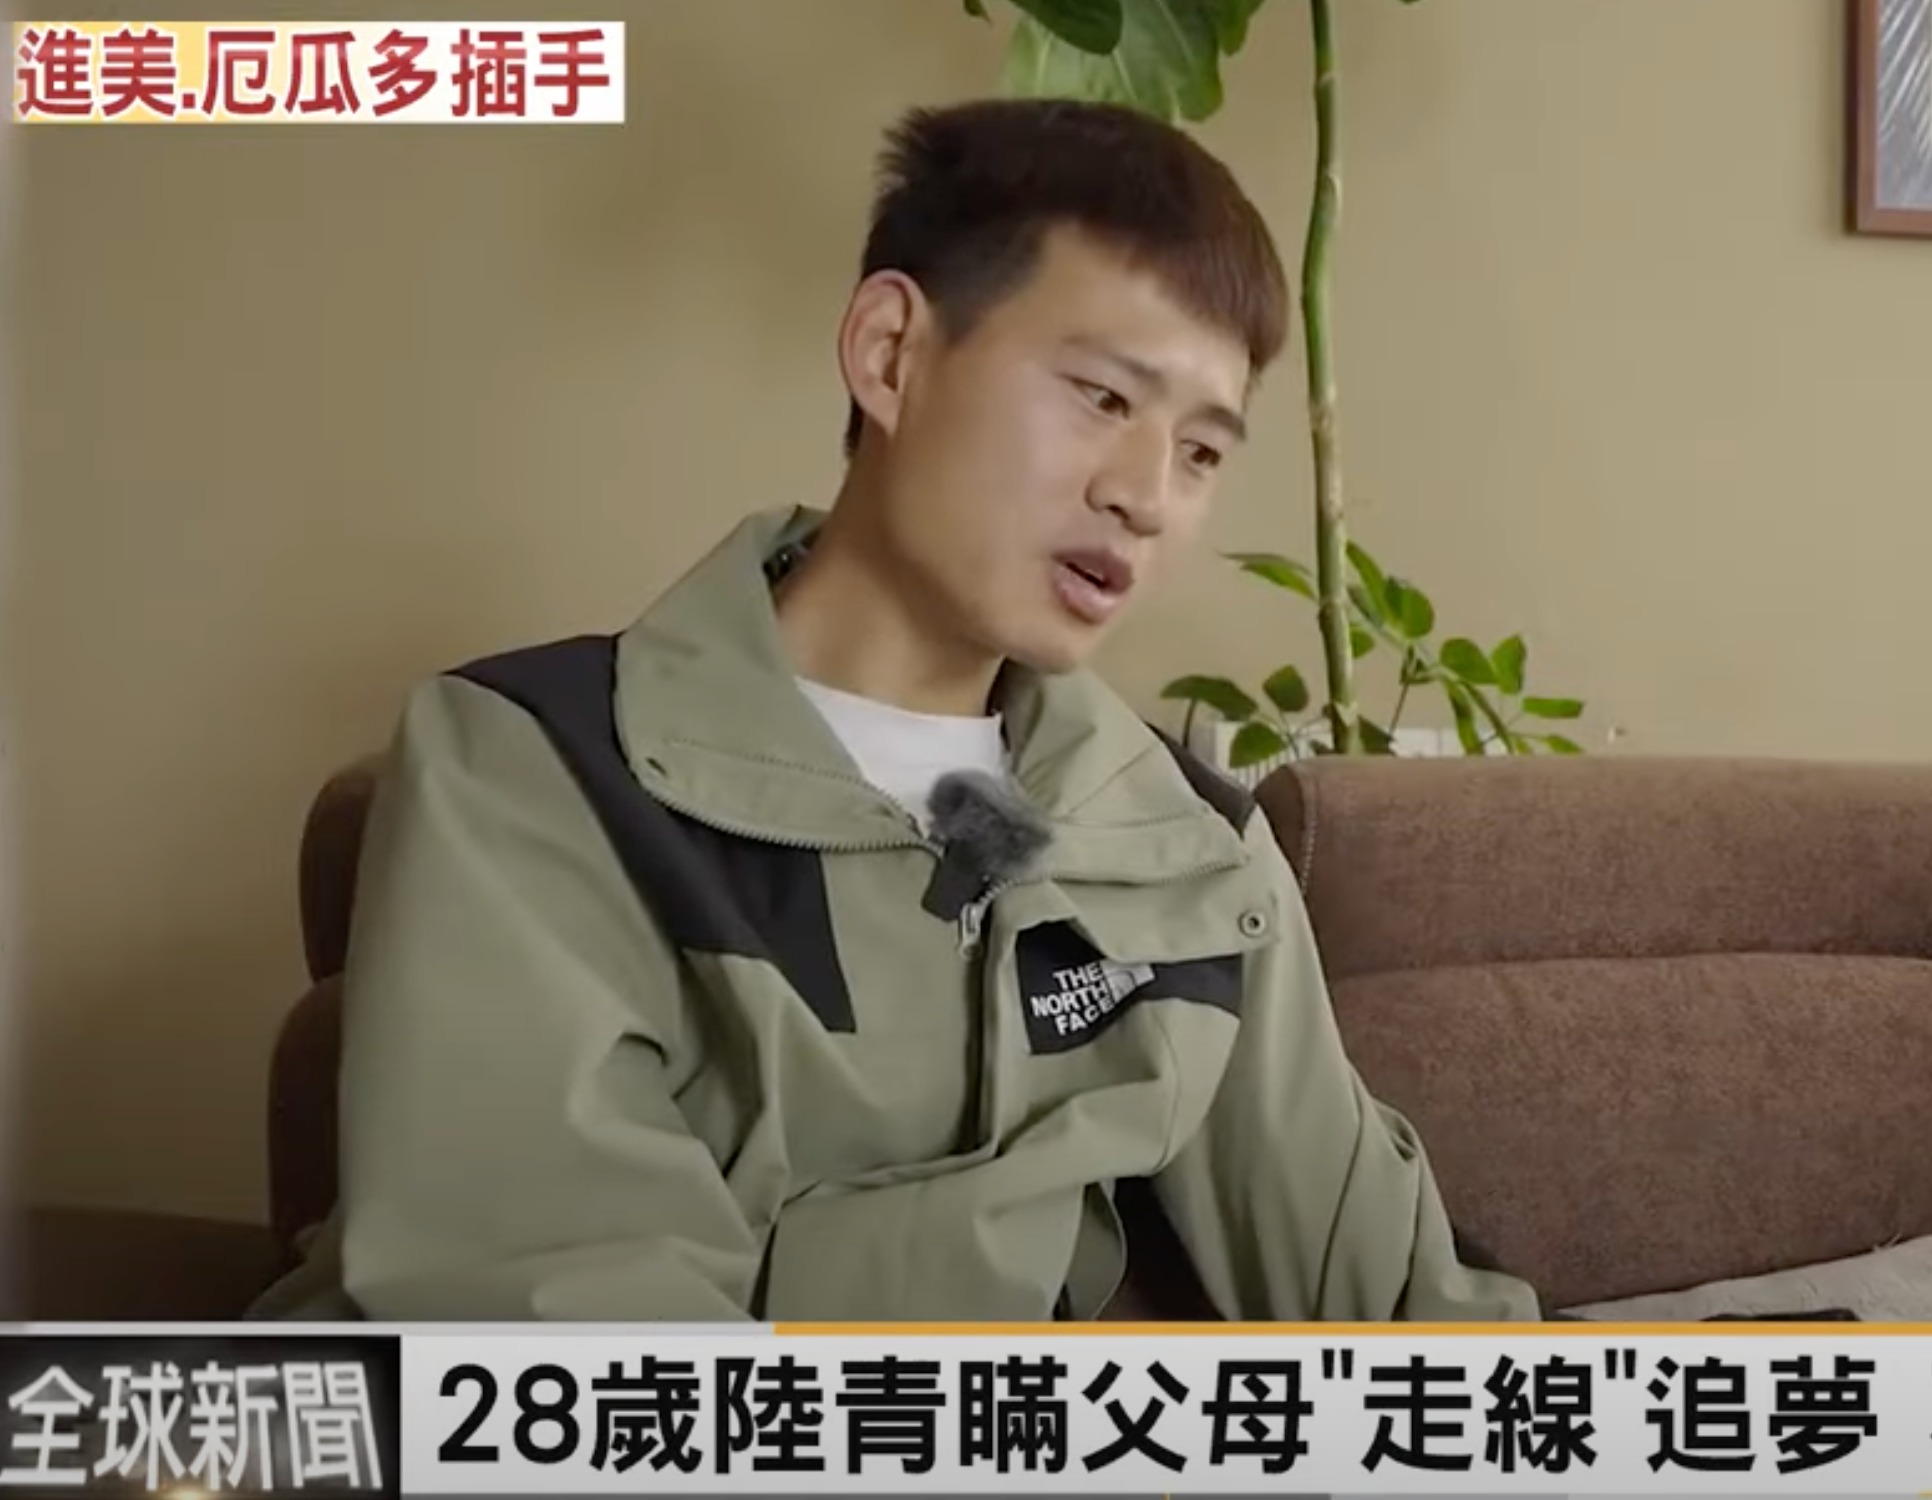 中國雲南28歲鄭姓青年偷渡客